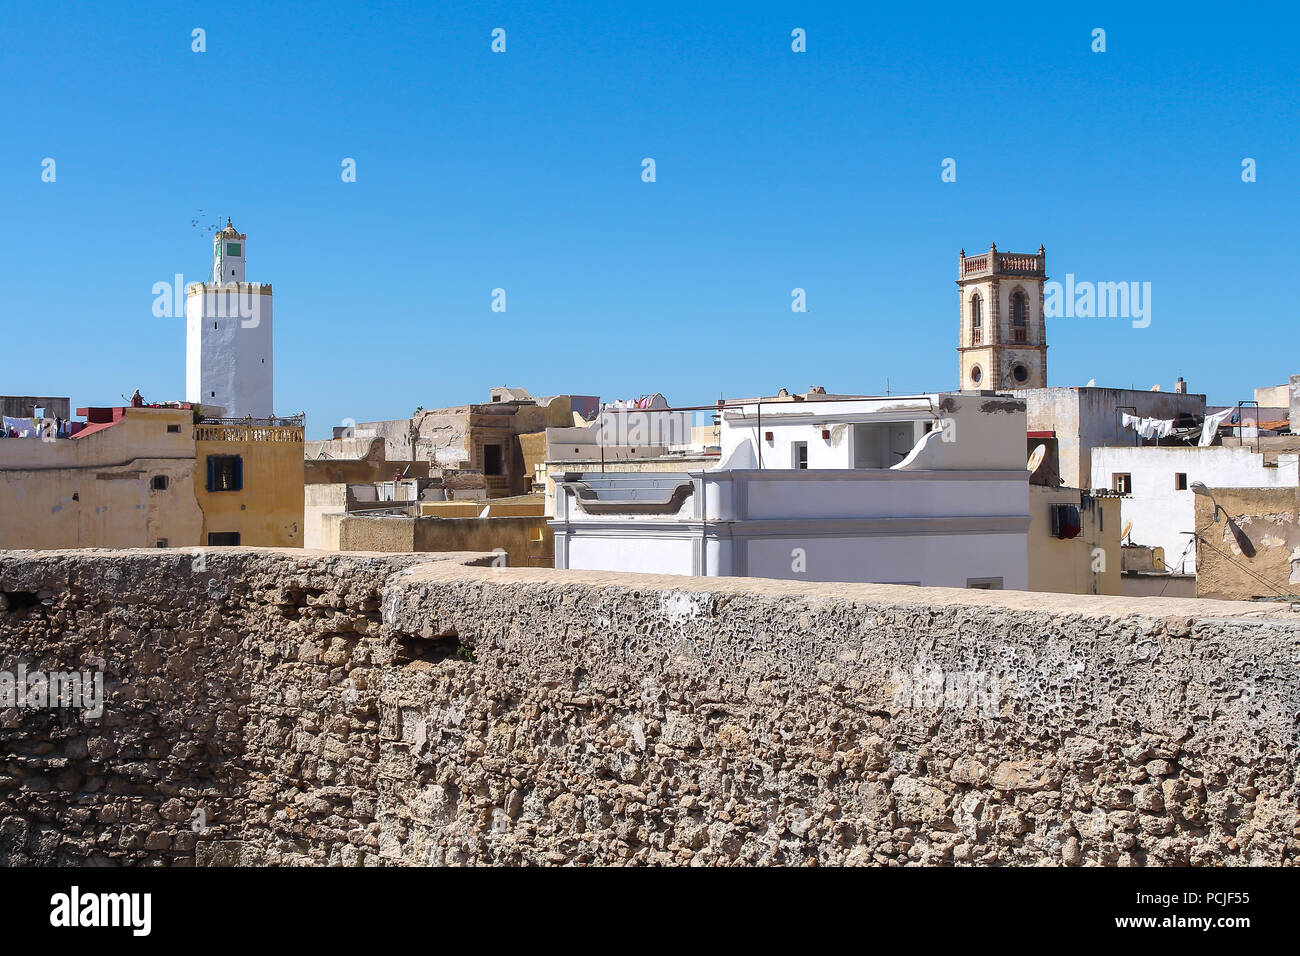 Toits et murs de l'immeuble d'habitations et sur la gauche une tour de grande mosquée de ancienne forteresse portugaise à El Jadida, Maroc. Ciel bleu Banque D'Images